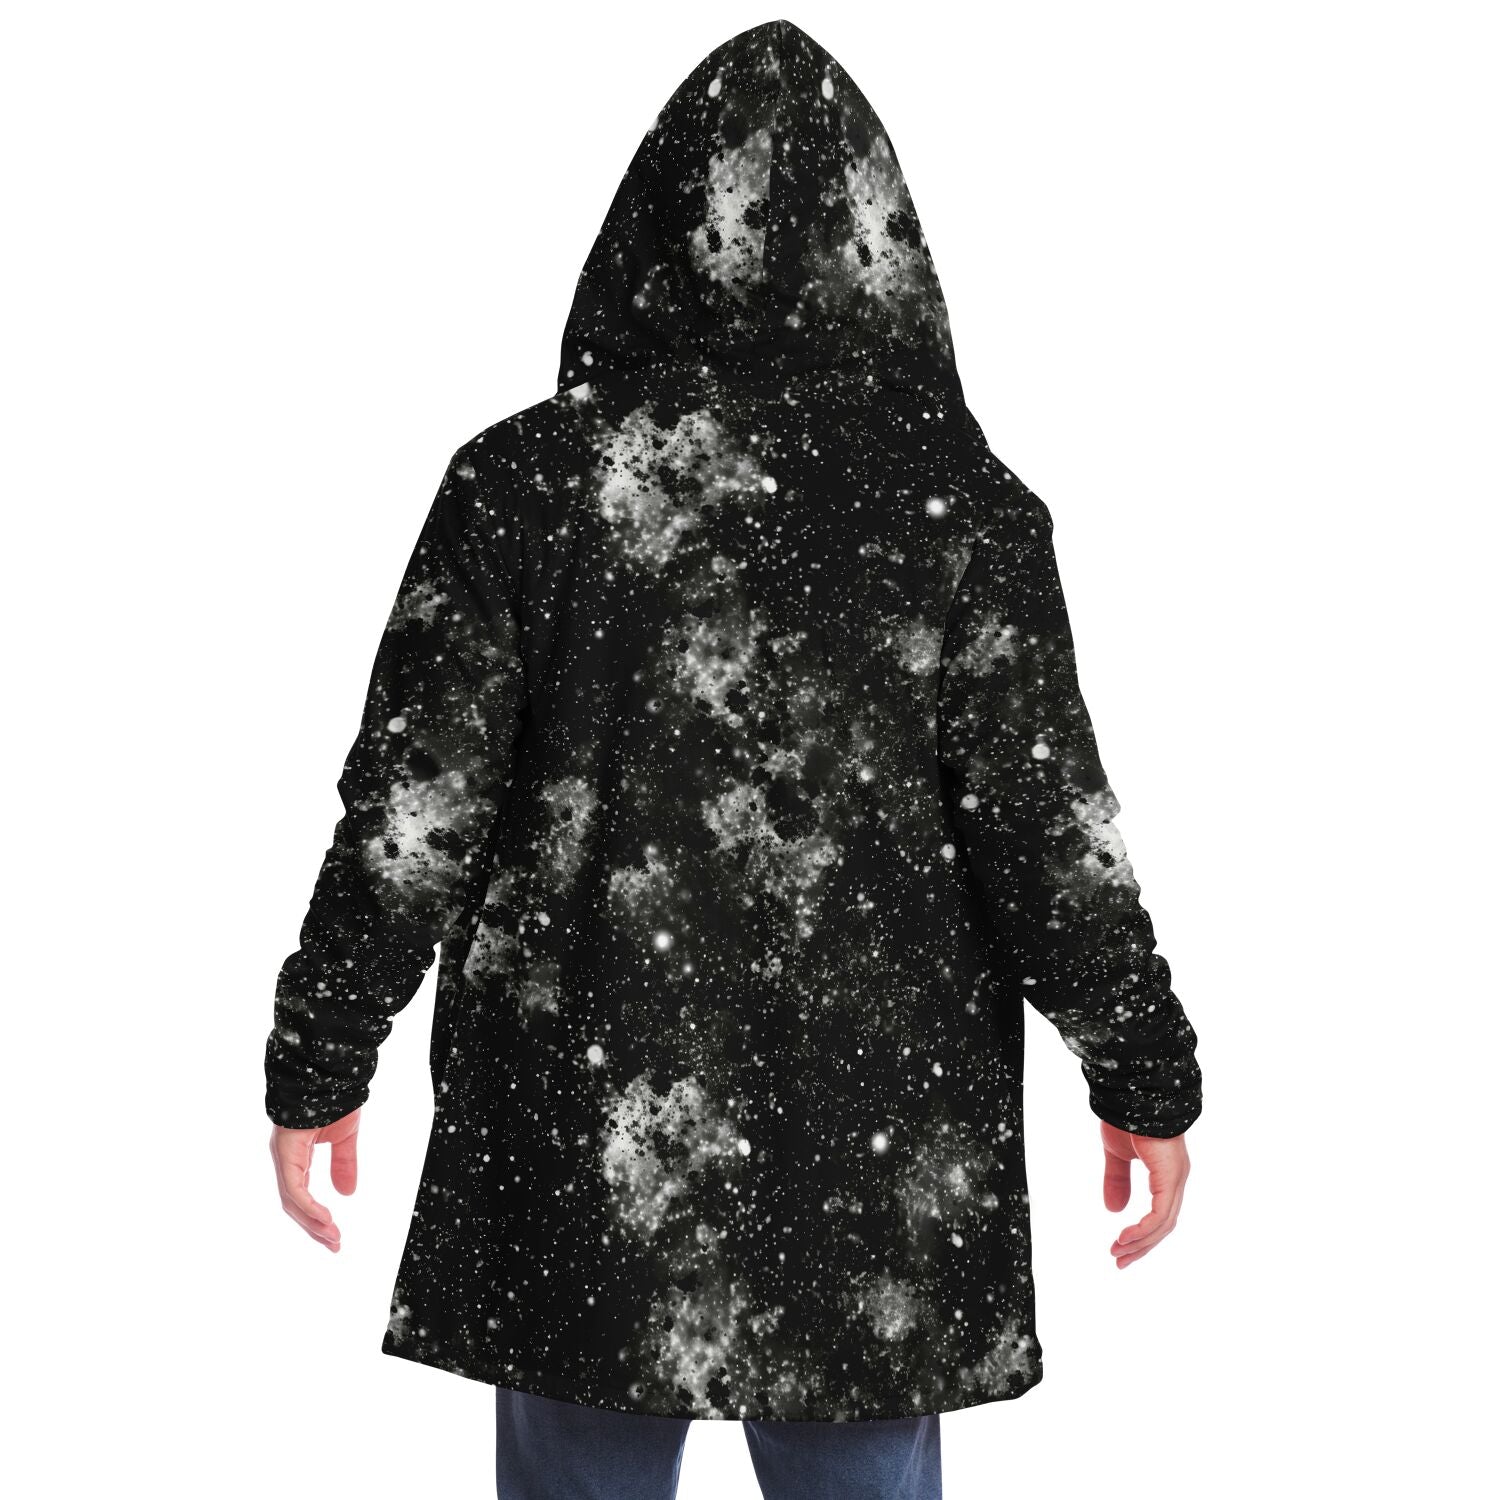 Black Galaxy Hooded Cloak, Space Universe Dark Matter Men Women Winter Warm Mink Blanket Festival Rave Wearable Cape Pockets Starcove Fashion